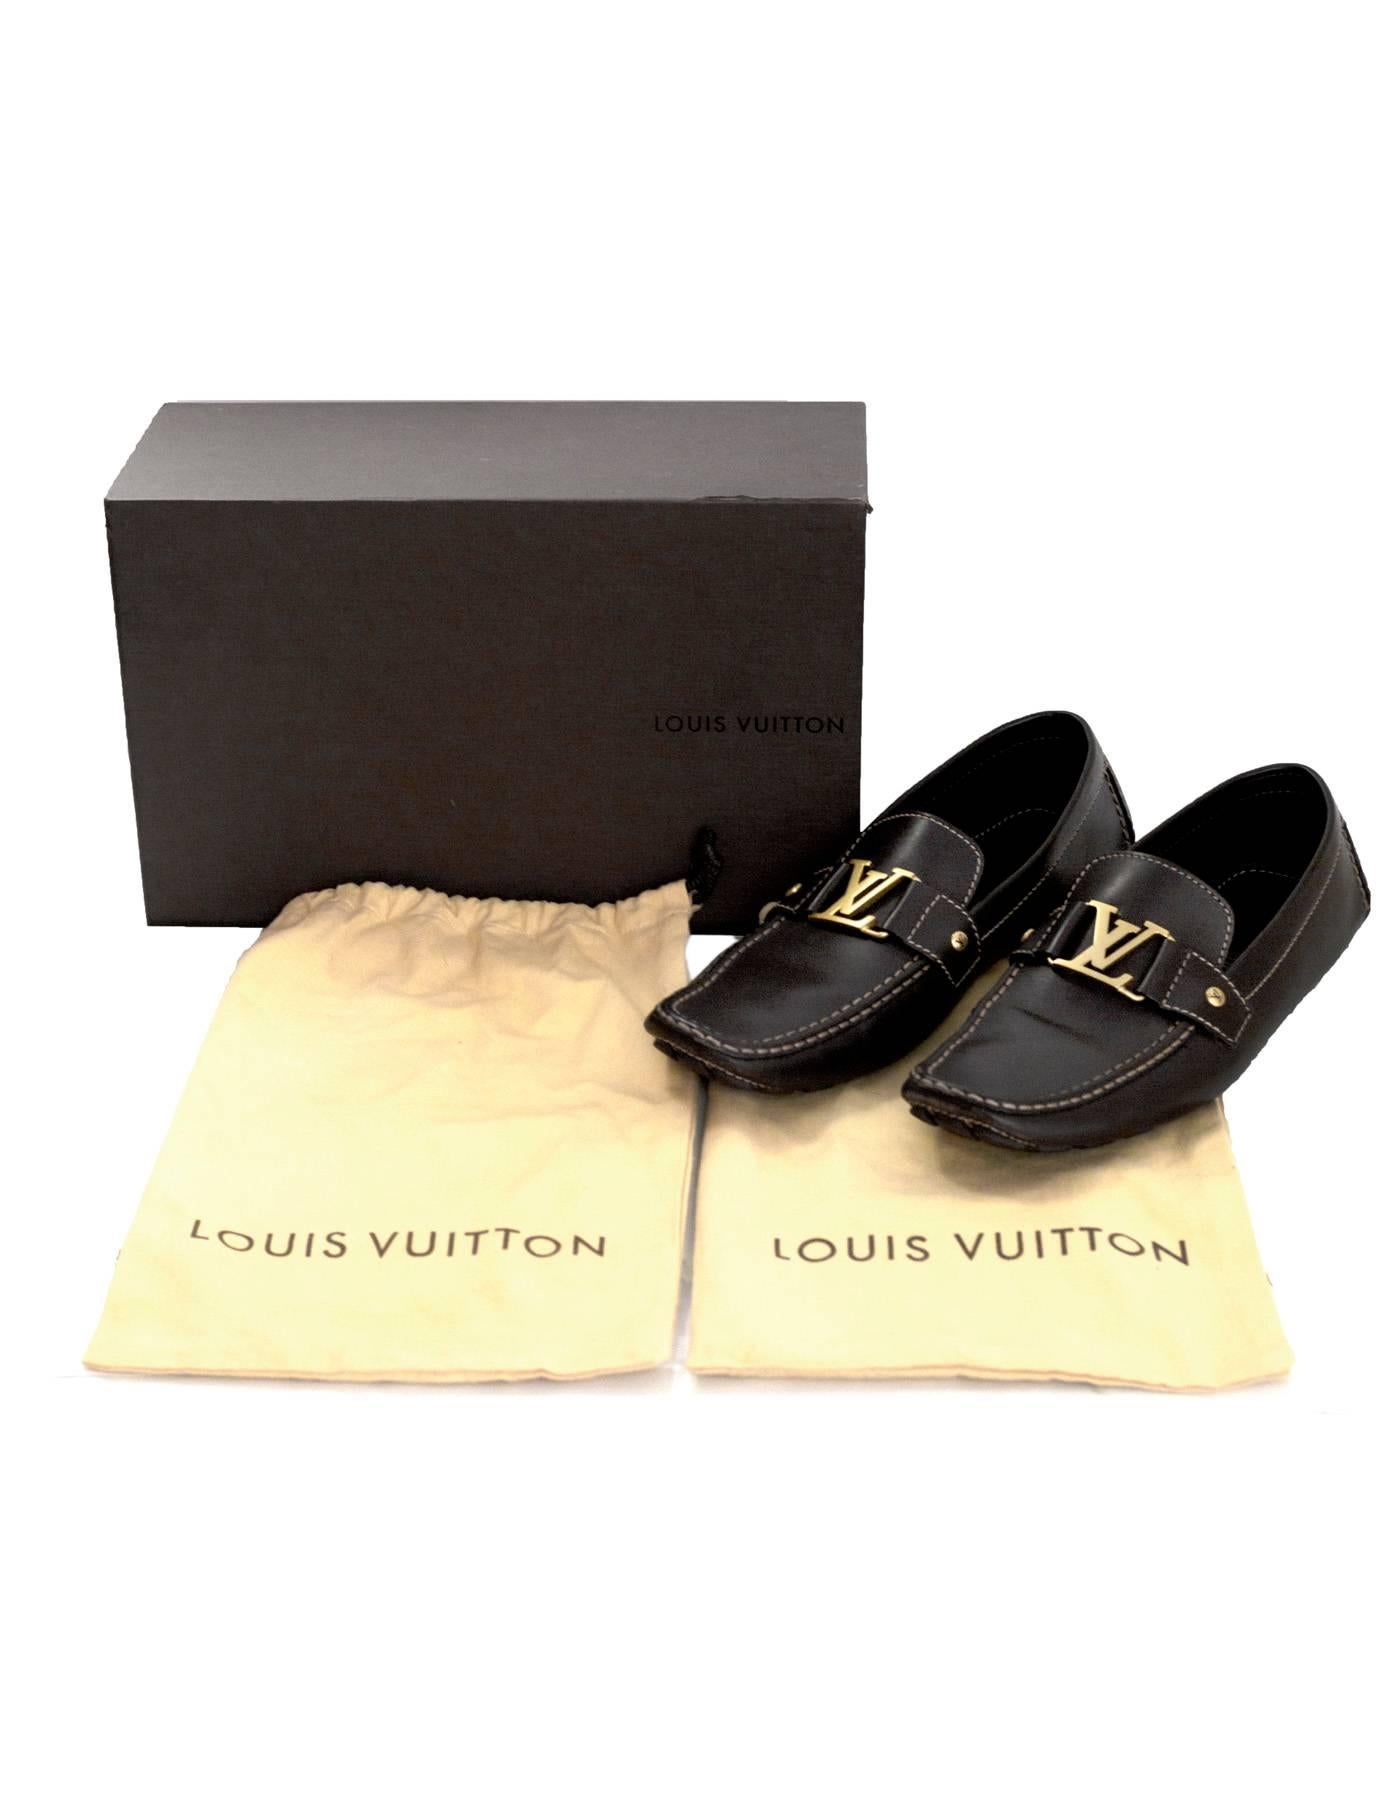 Louis Vuitton Men's Brown Leather Monte Carlo Car Shoes sz US12 1